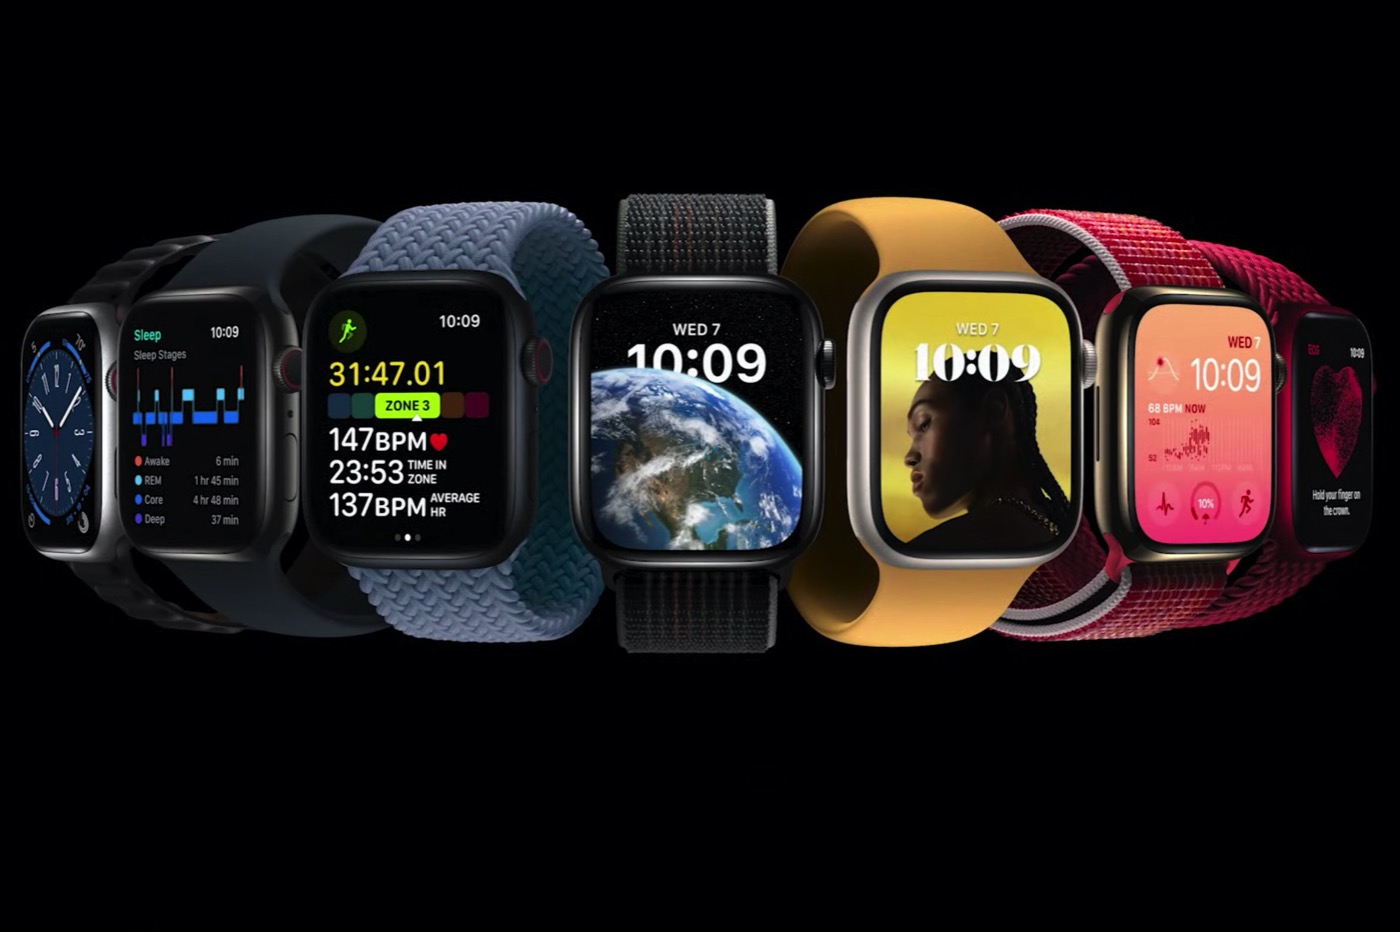 apple-watch-8-color.jpg - 155.80 kB